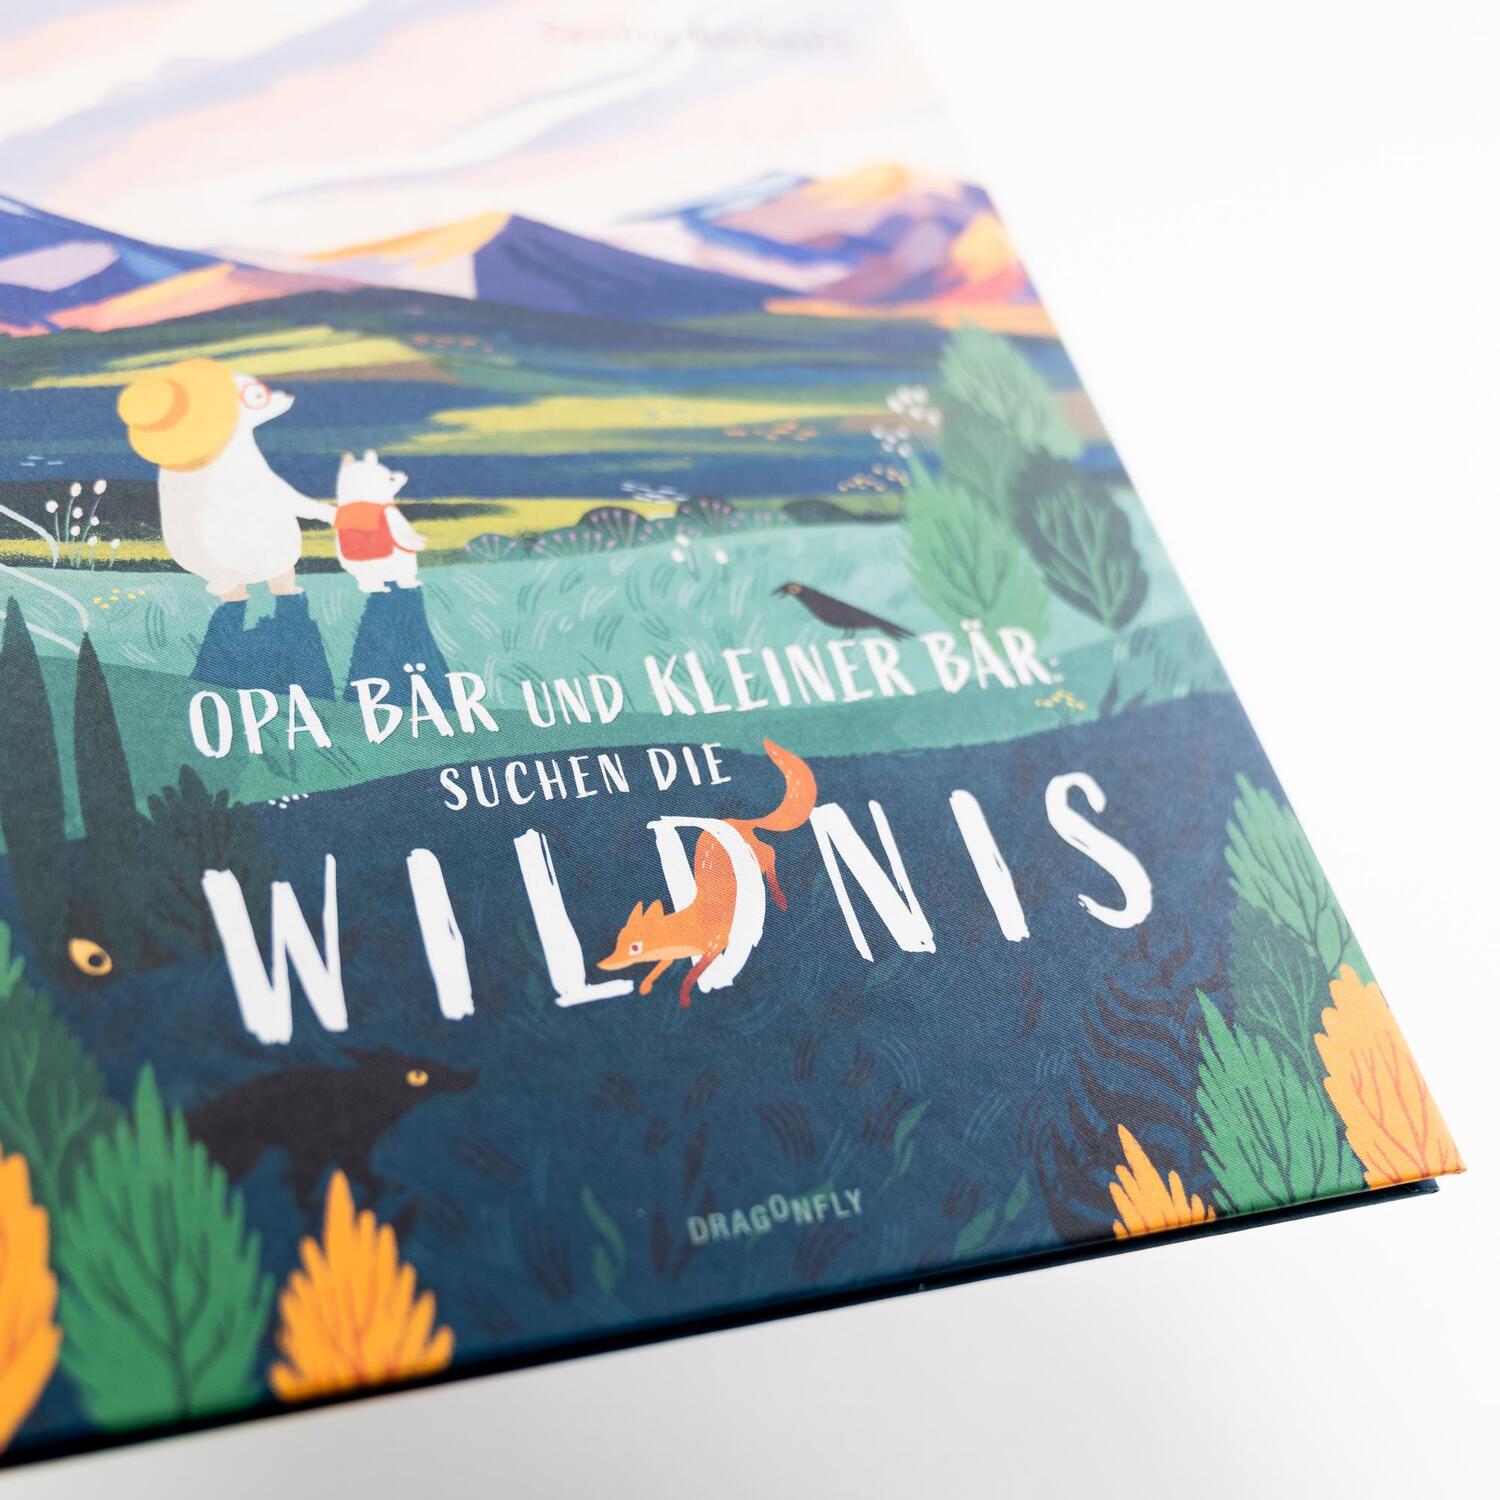 Bild: 9783748802266 | Opa Bär und Kleiner Bär suchen die Wildnis | Cecilia Heikkilä | Buch